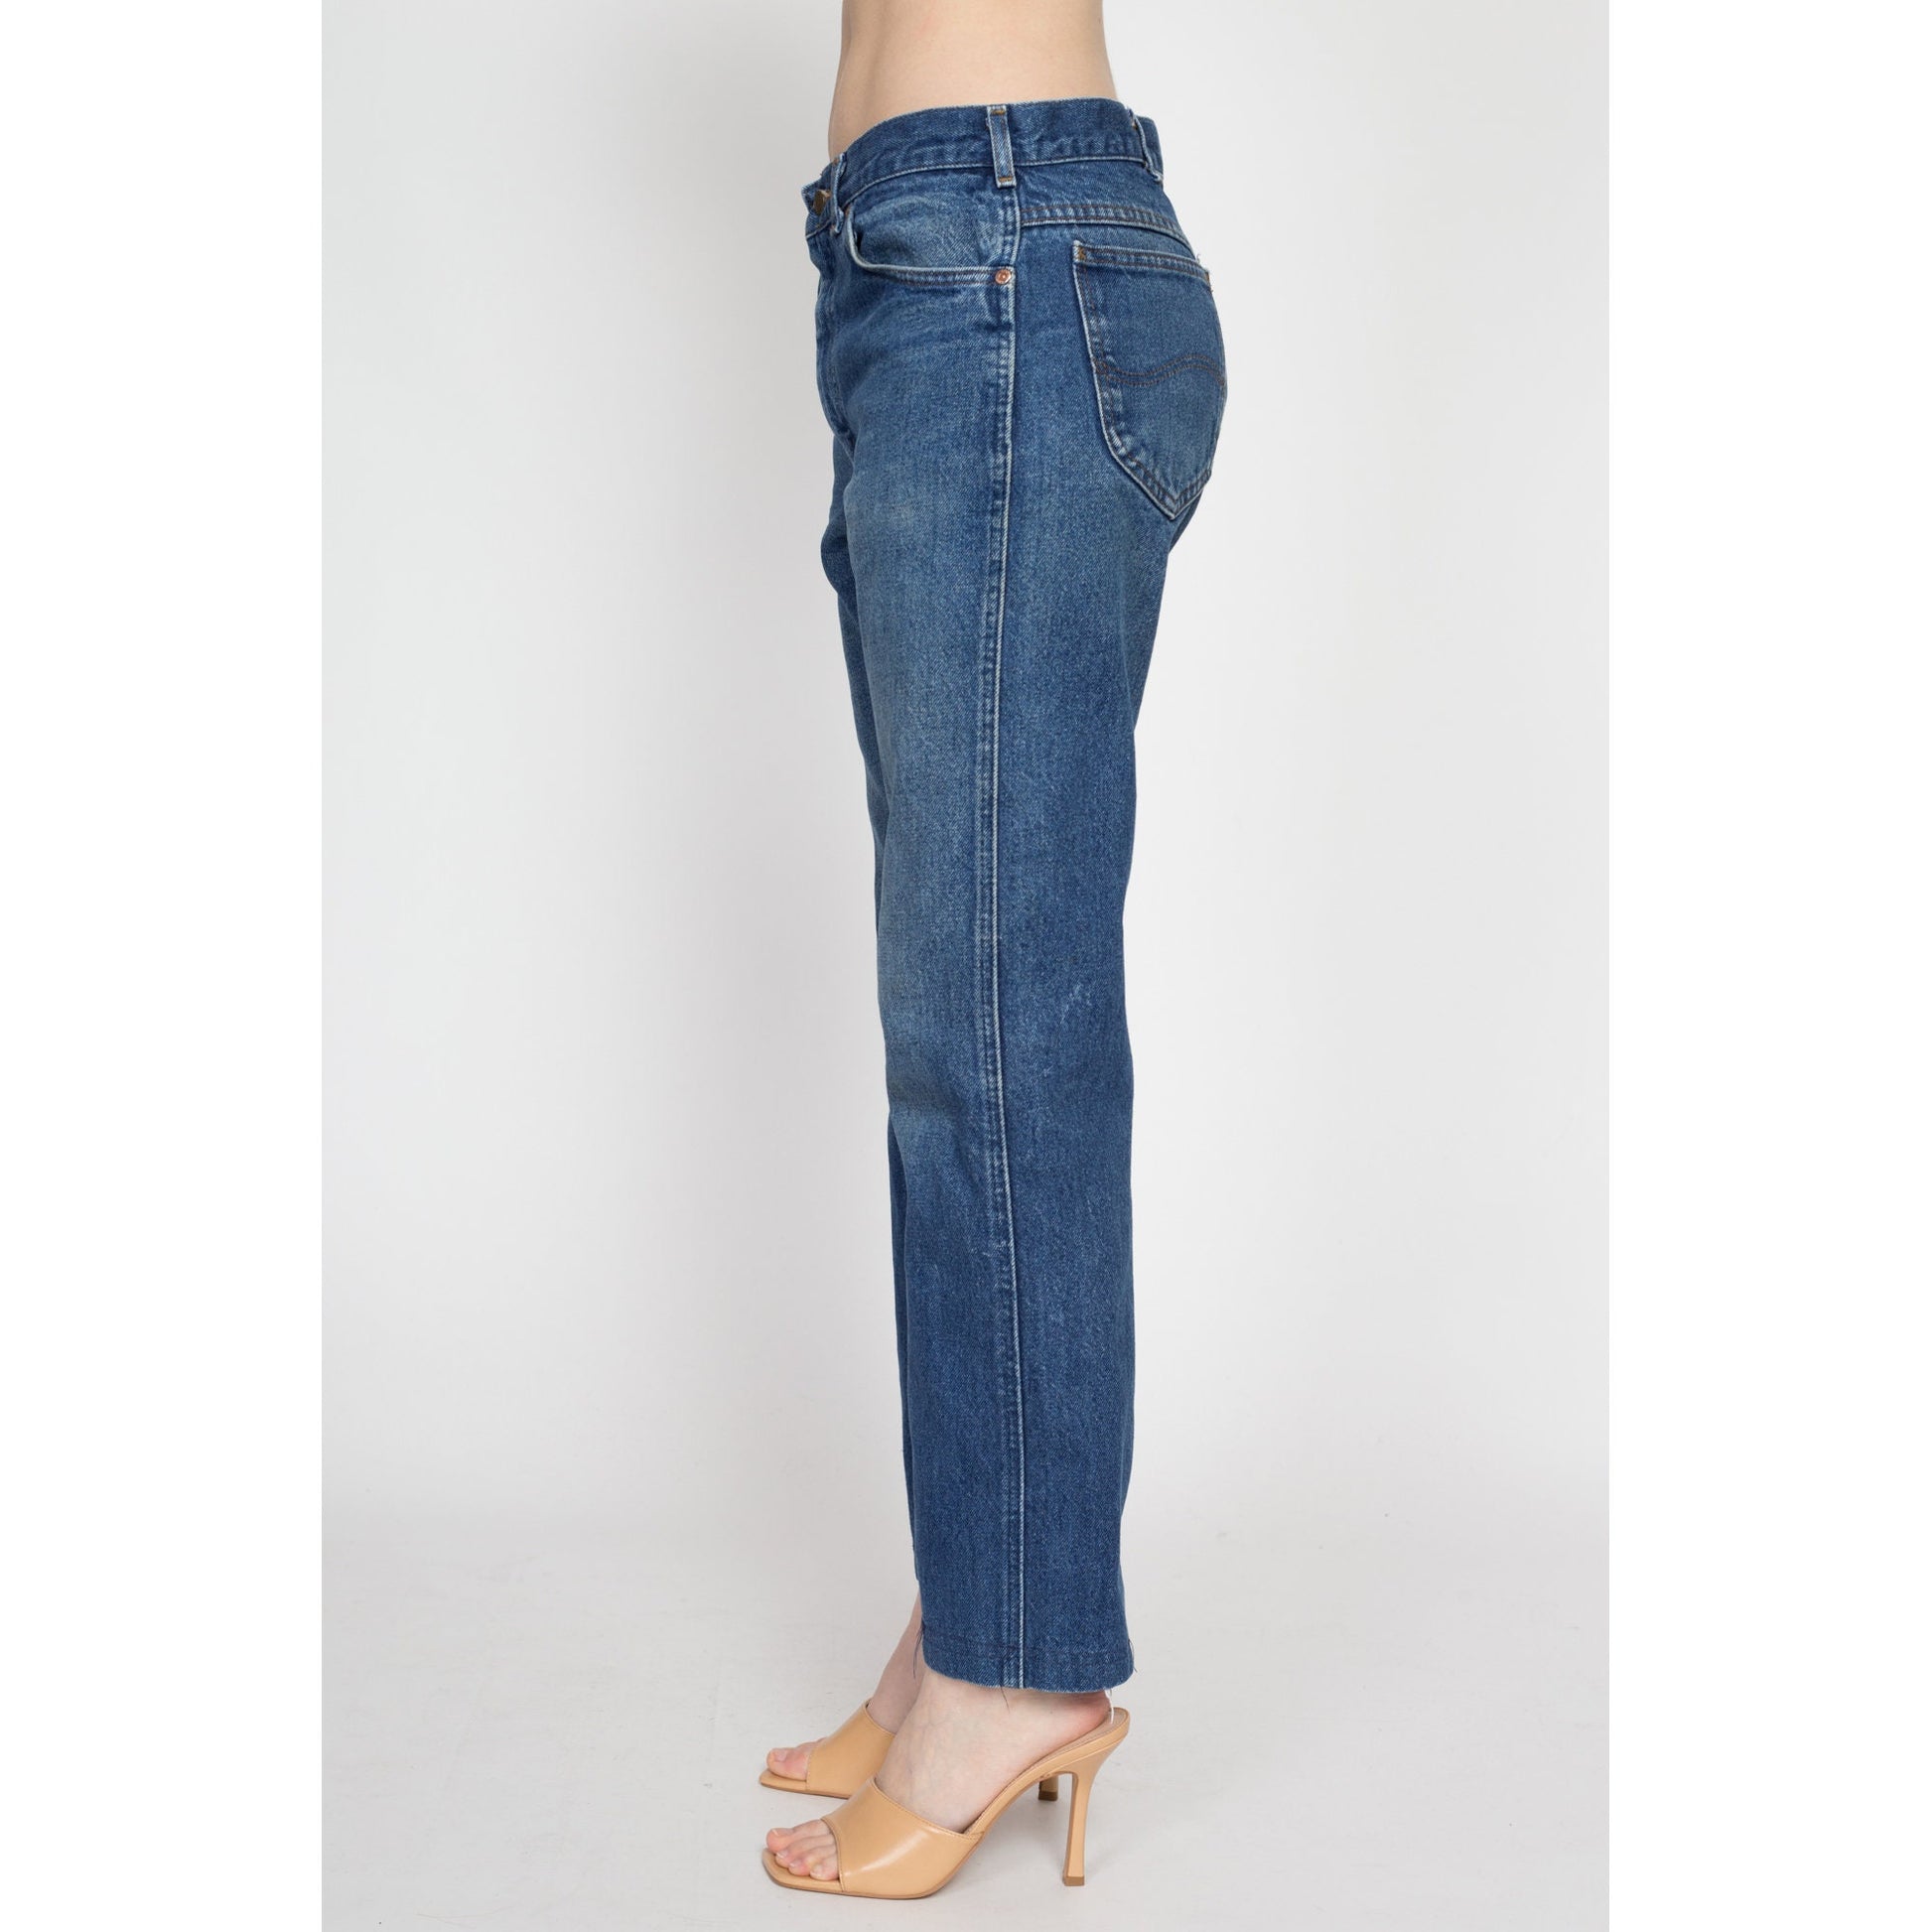 Vintage Lee Riders Unisex Jeans - 31" Waist | 80s Dark Wash Denim Straight Leg Boyfriend Jeans